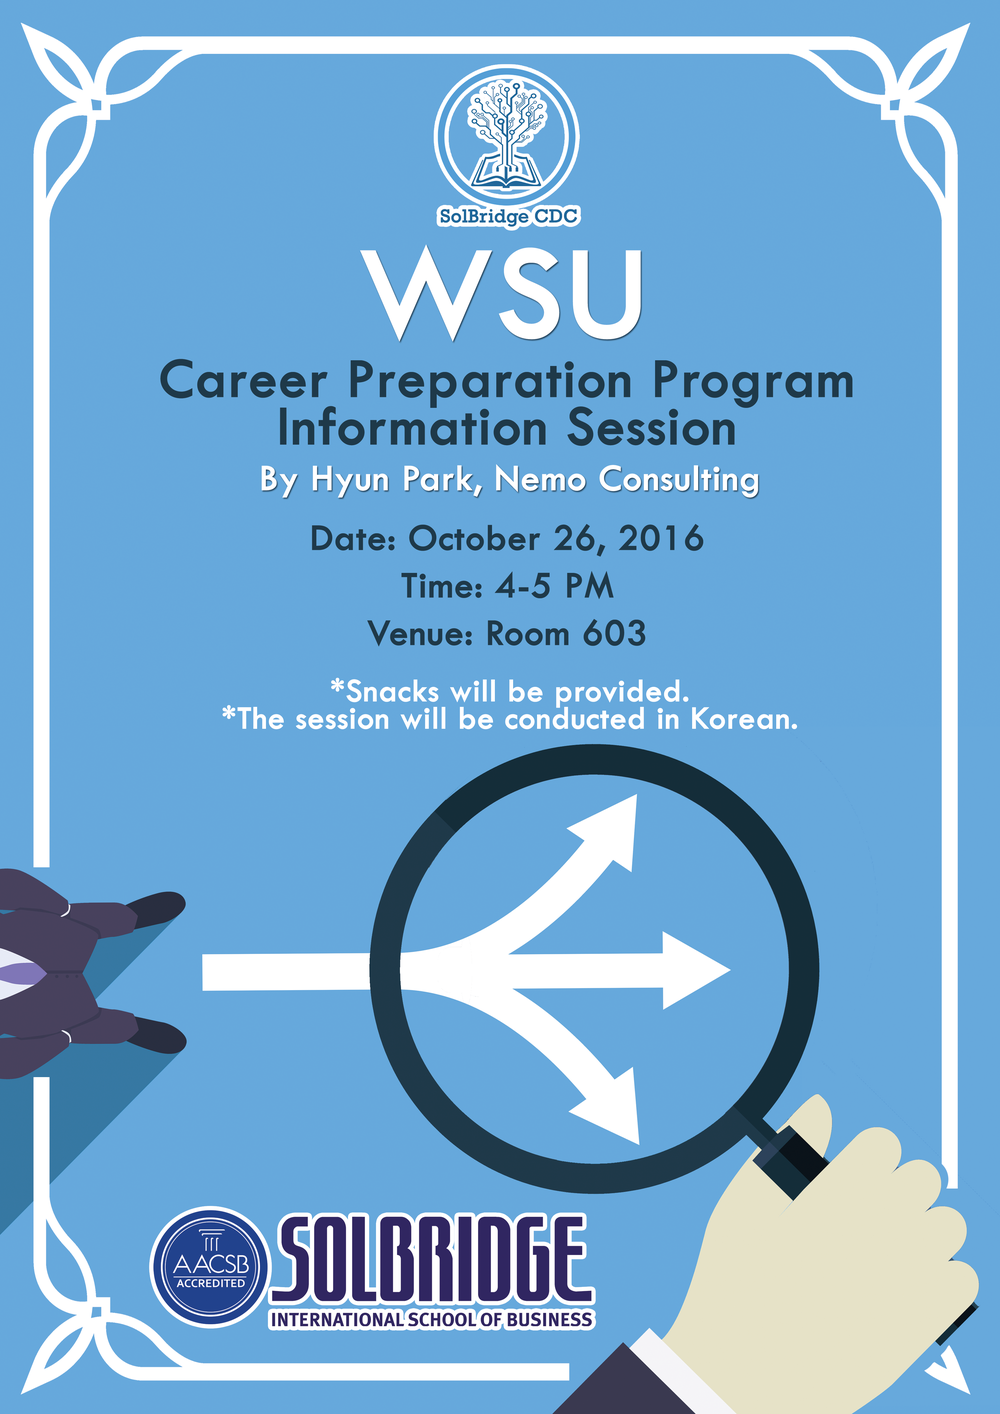 Information Session: Career Preparation Program